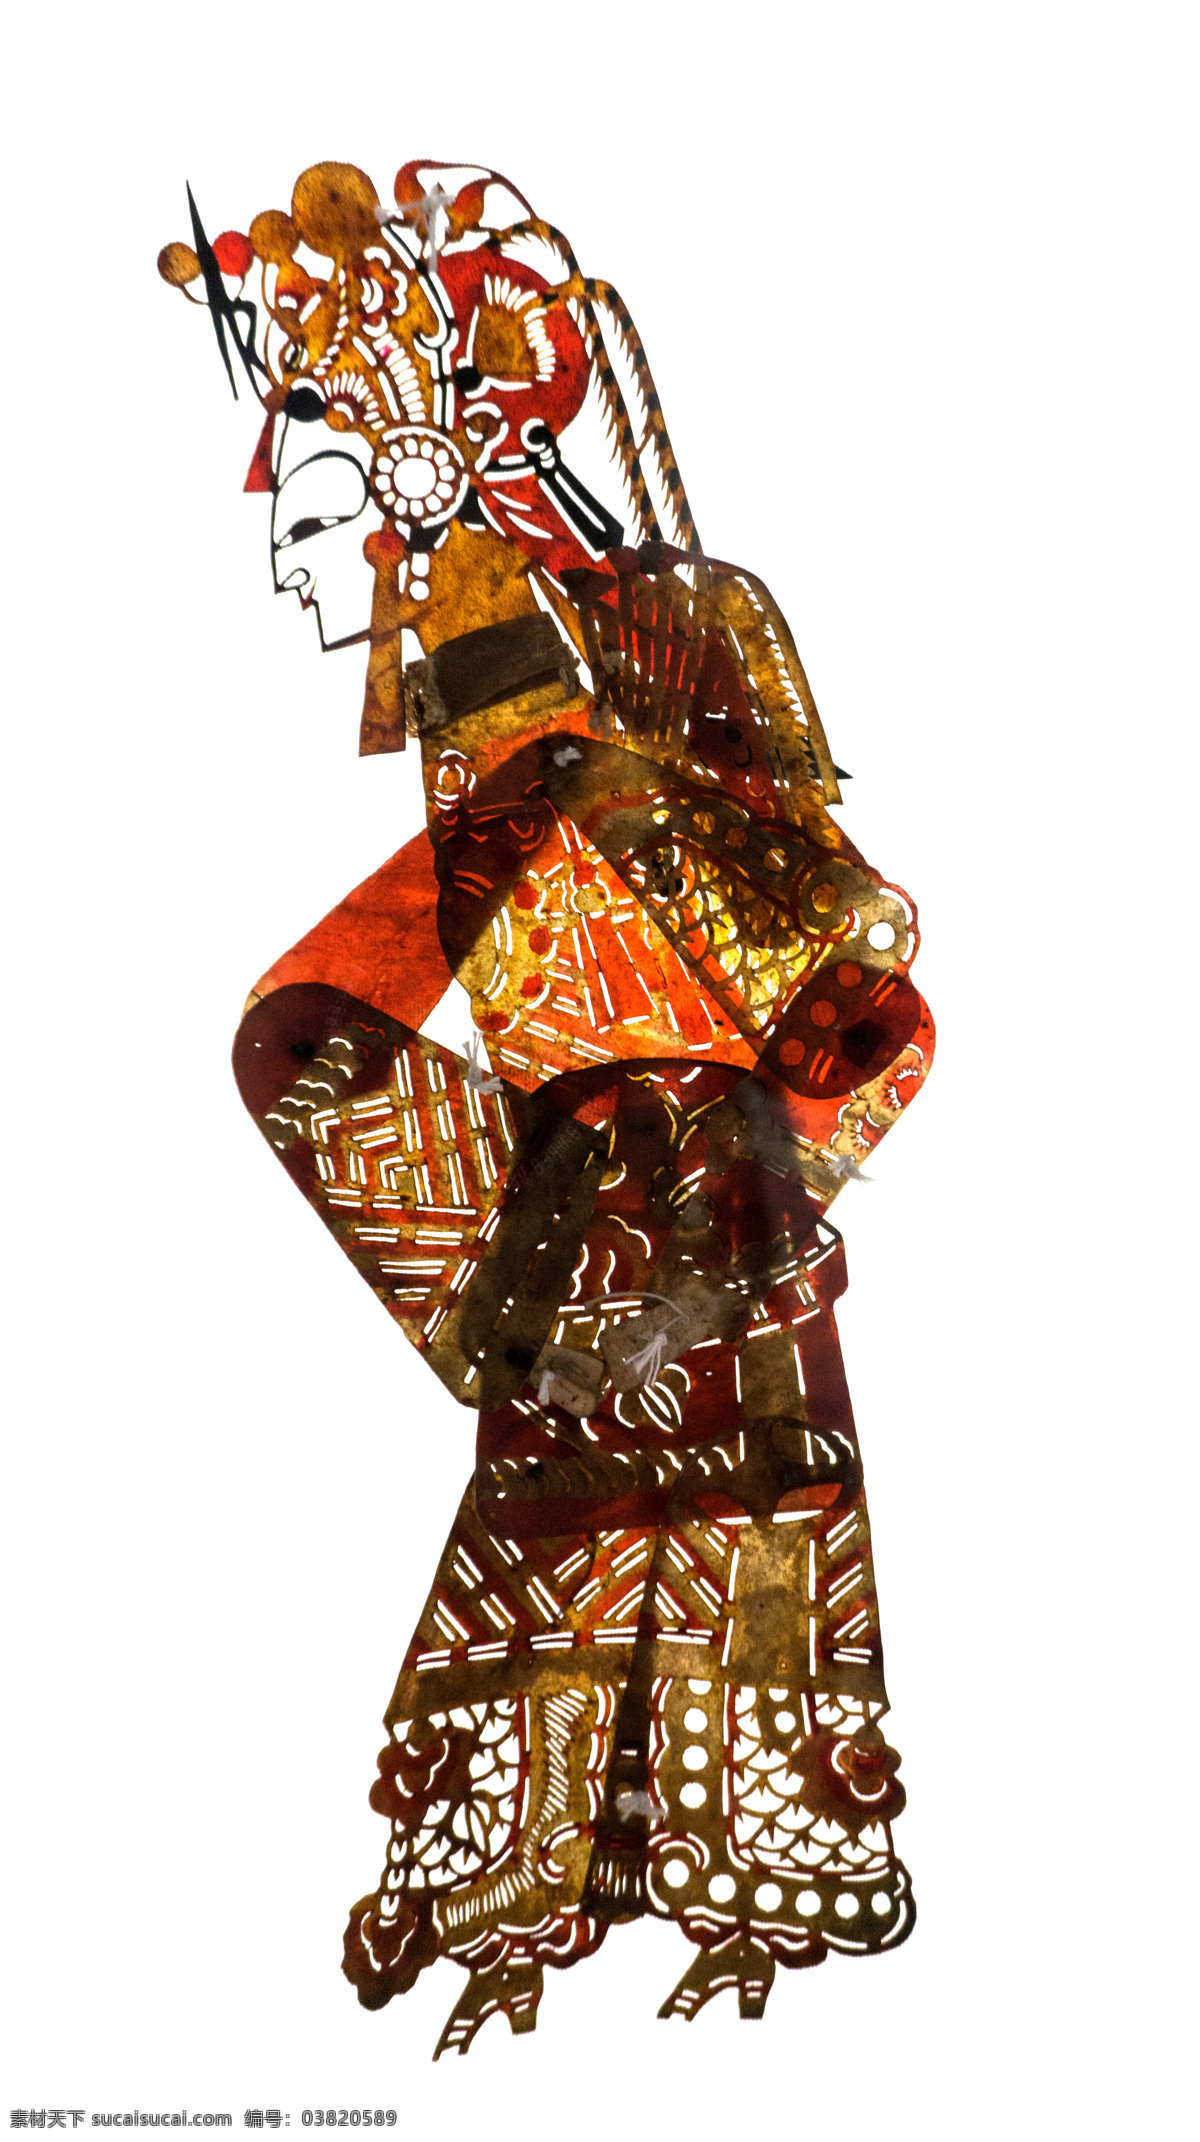 皮影戏 古装人物 皮影 传统 文化 文化遗产 古装 民族 戏曲 中国风 国粹 影子戏 驴皮影 戏剧艺术 文化艺术 传统文化